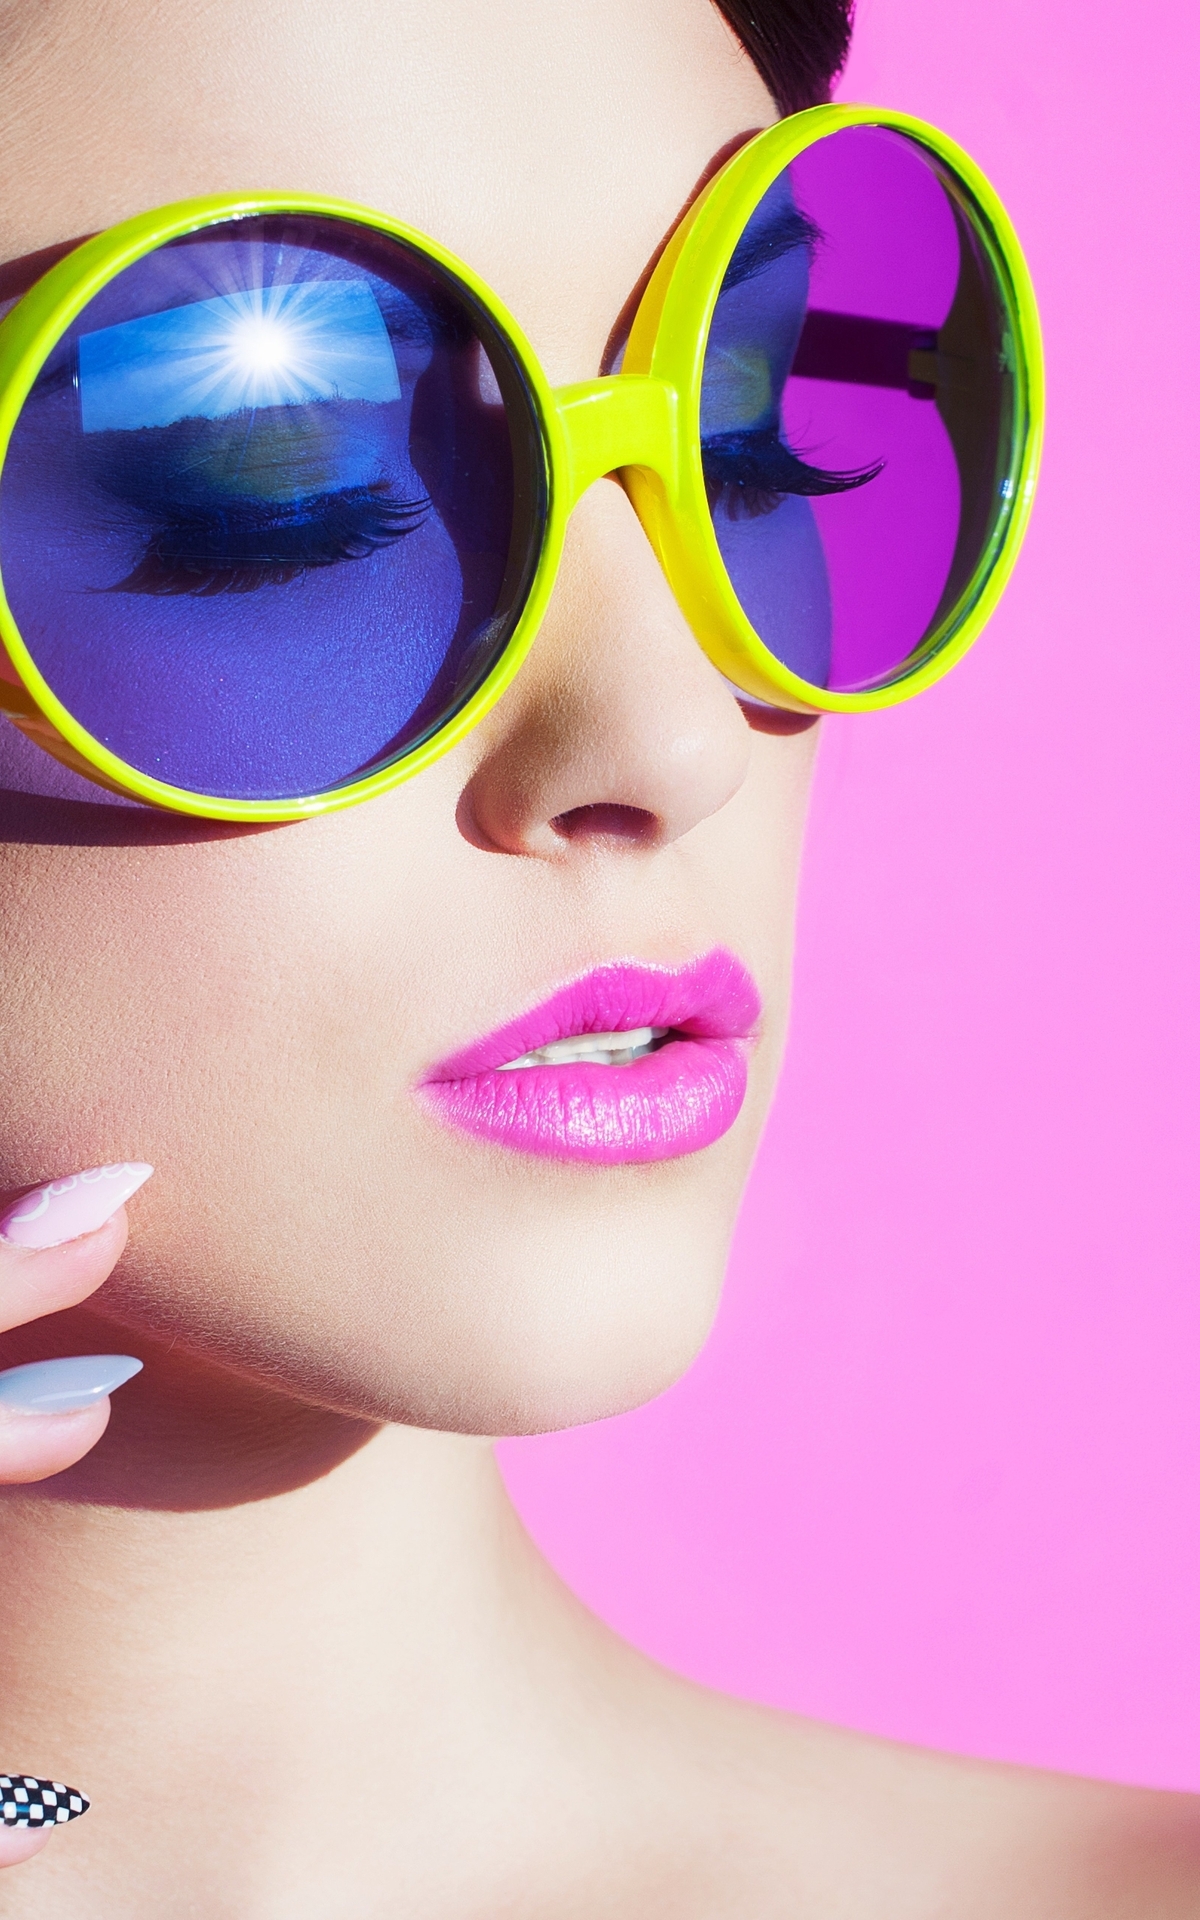 Картинка: Девушка, лицо, губы, макияж, очки, маникюр, розовый